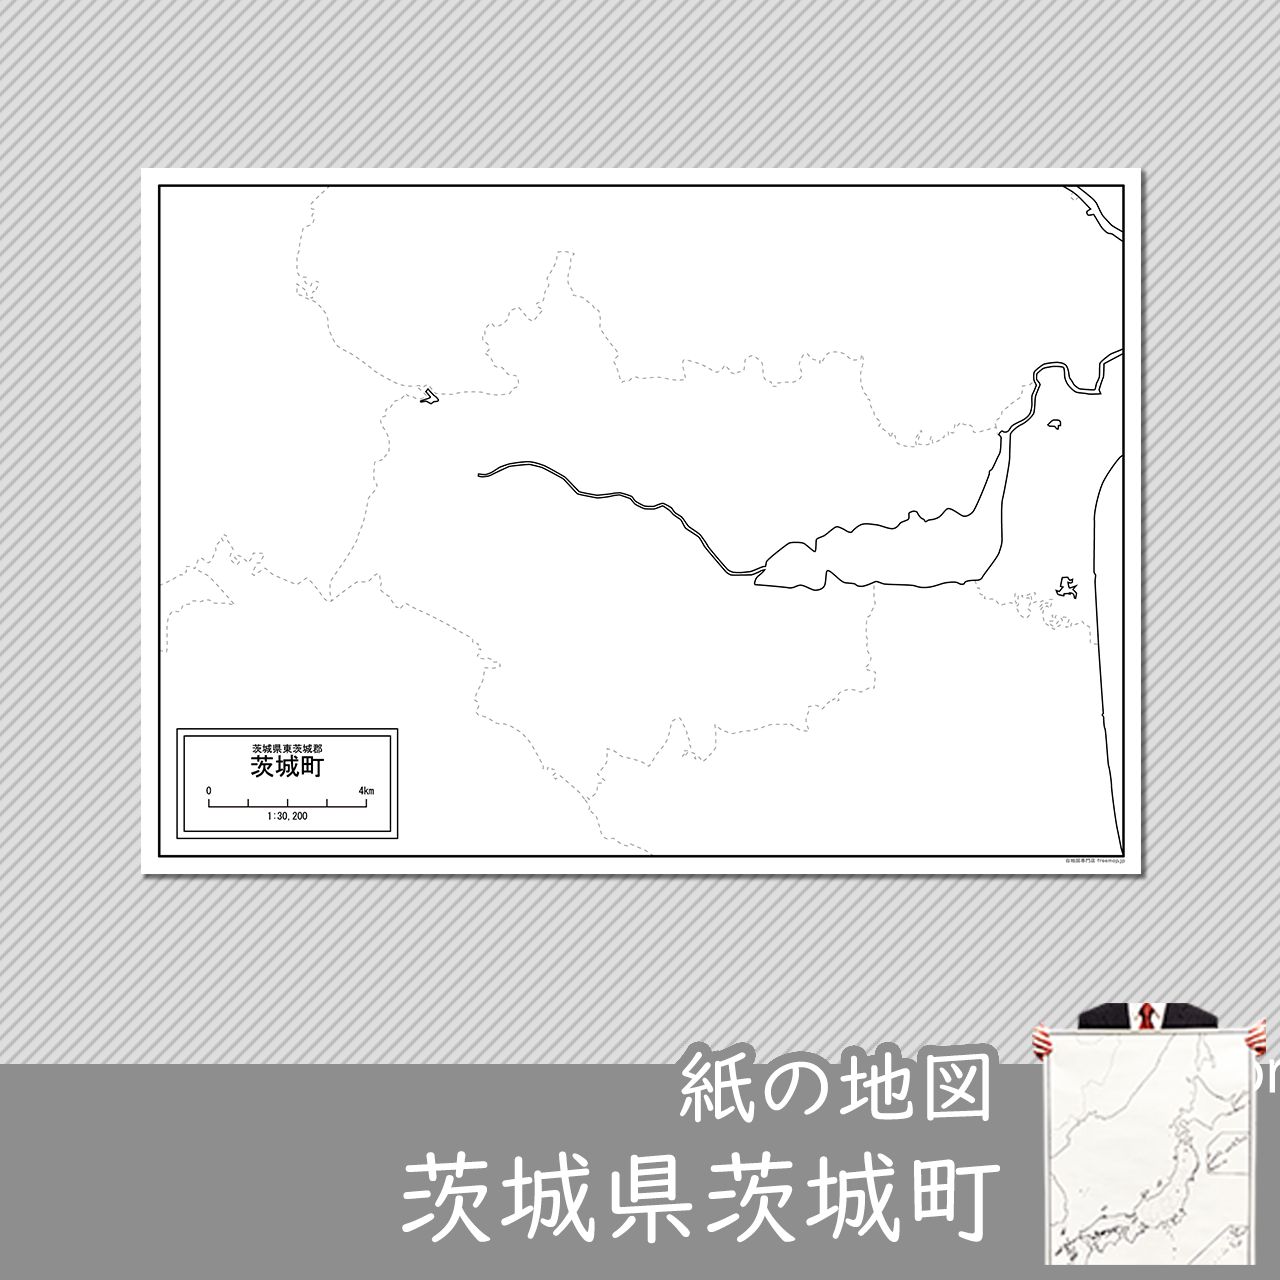 茨城町の紙の白地図のサムネイル